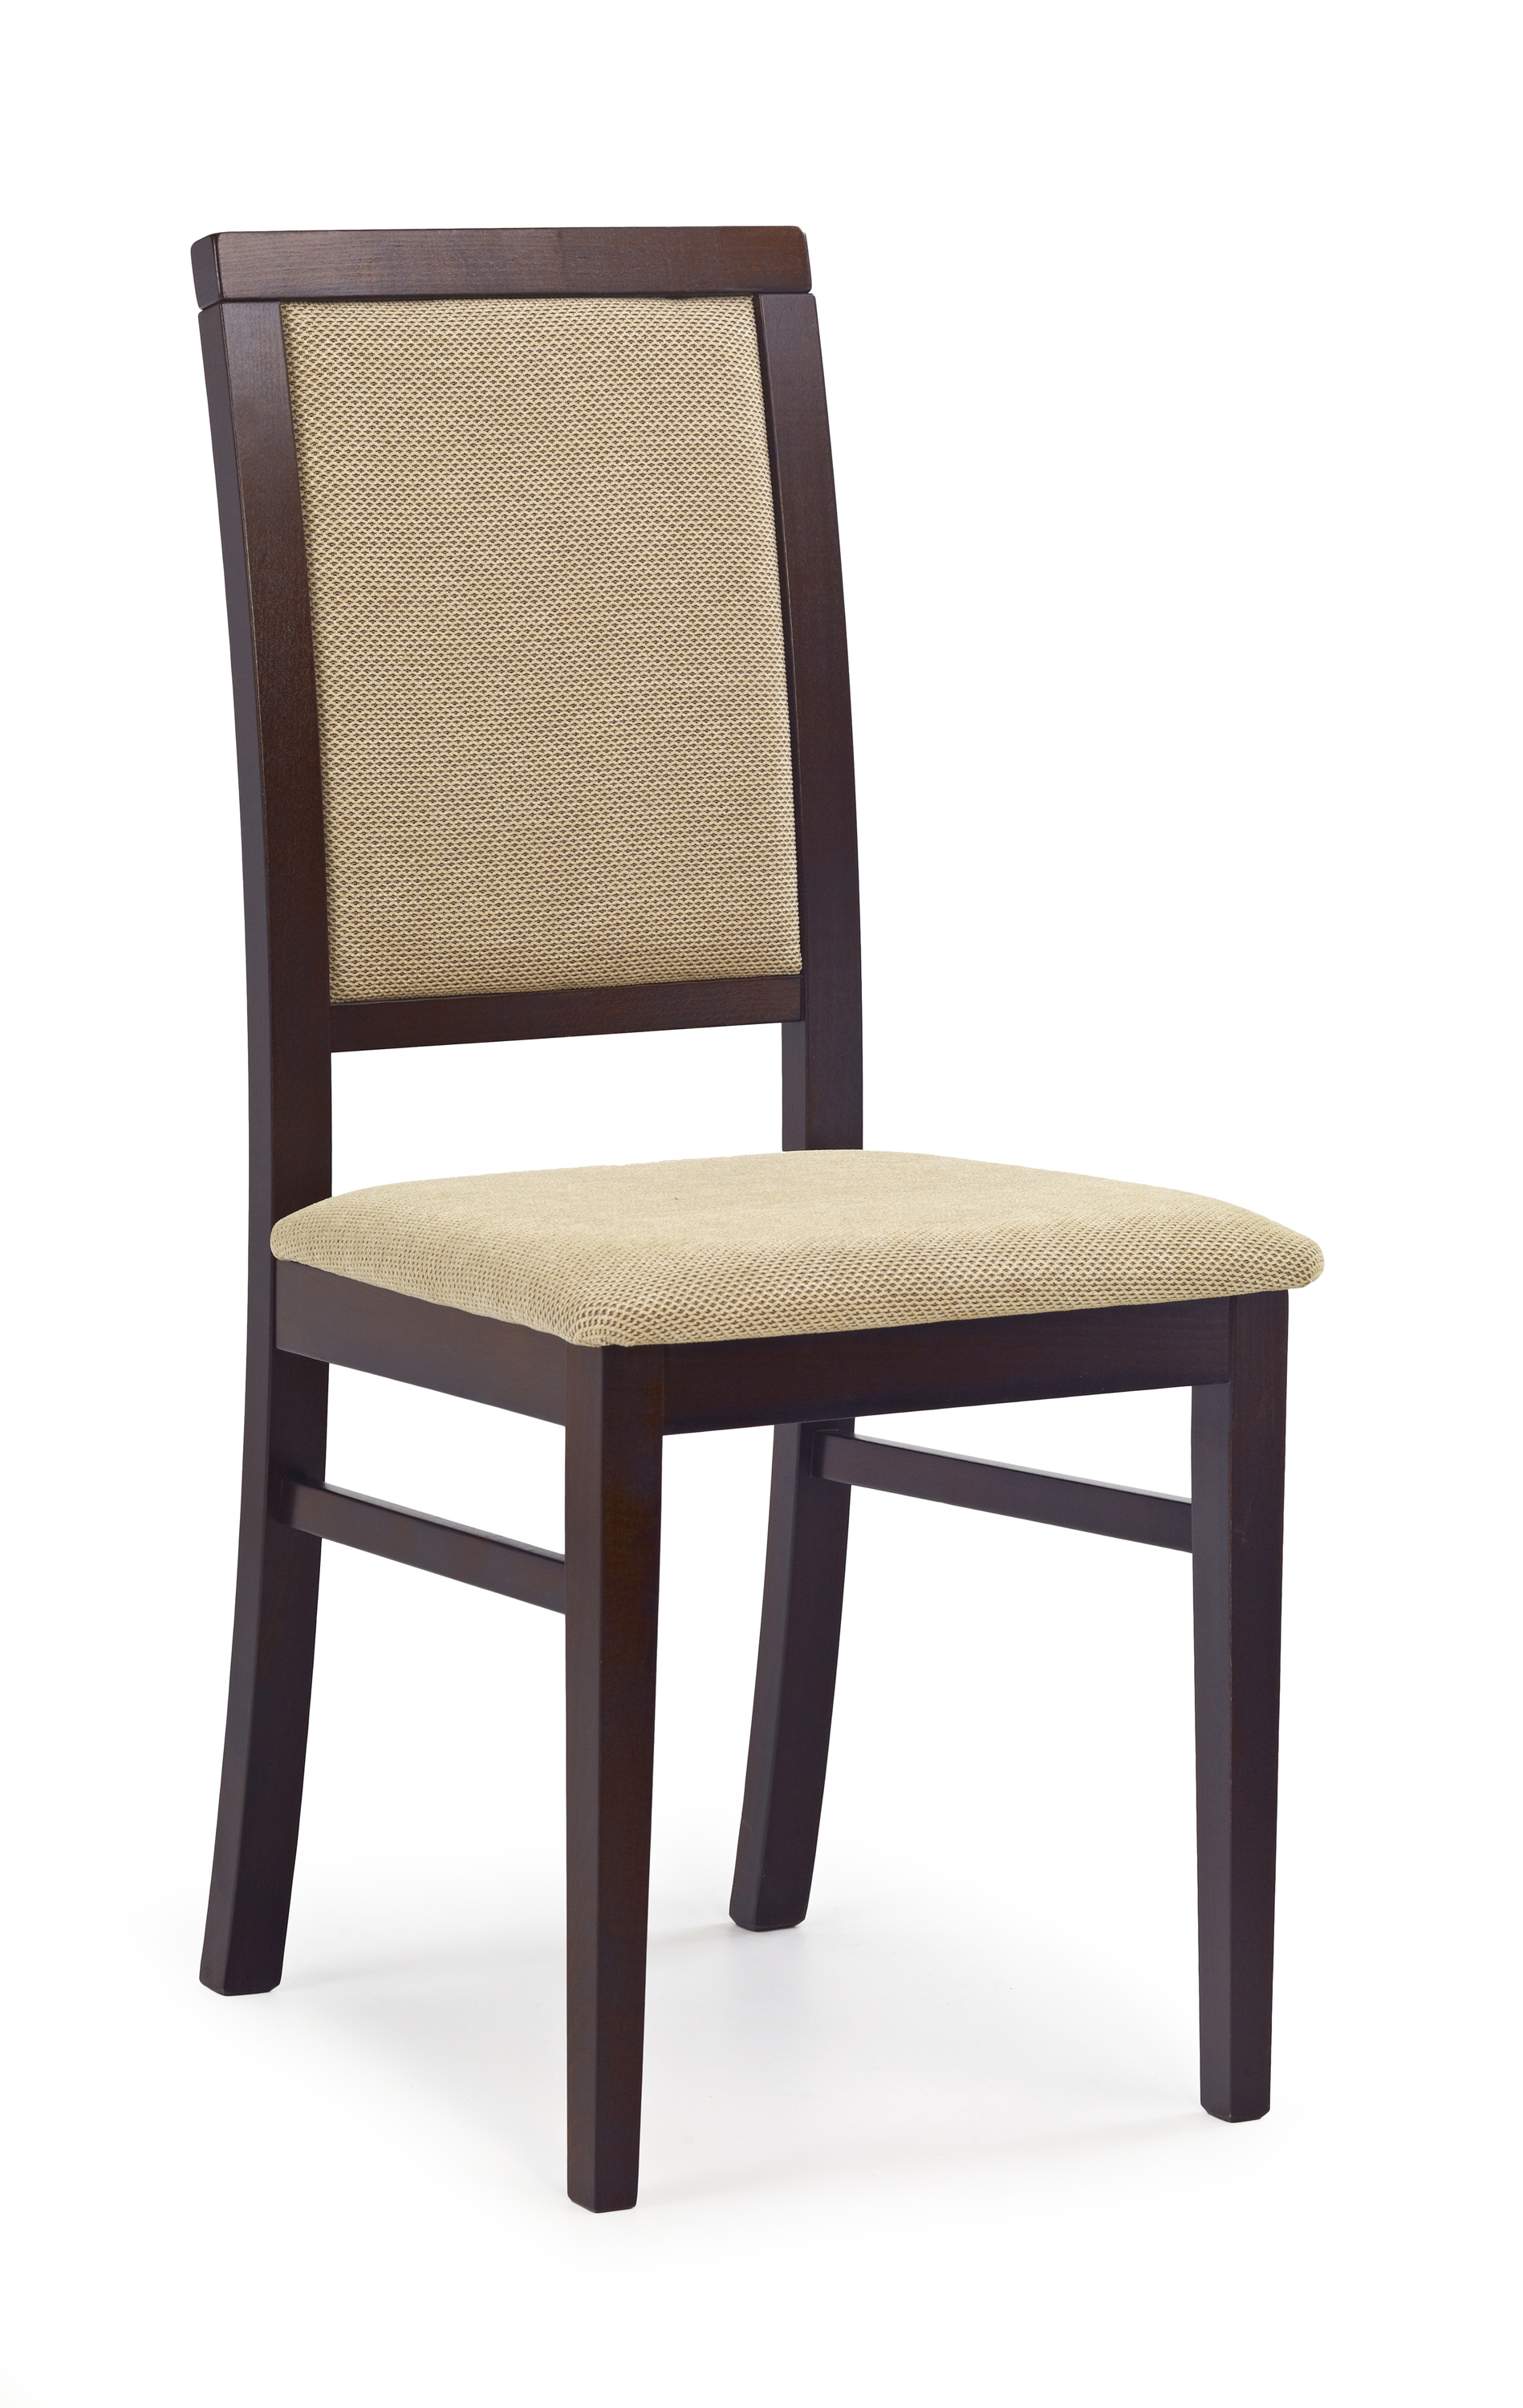 SYLWEK1 krzesło ciemny orzech, tkanina / tap: Torent Beige sylwek1 krzesło ciemny orzech, tkanina / tap: torent beige